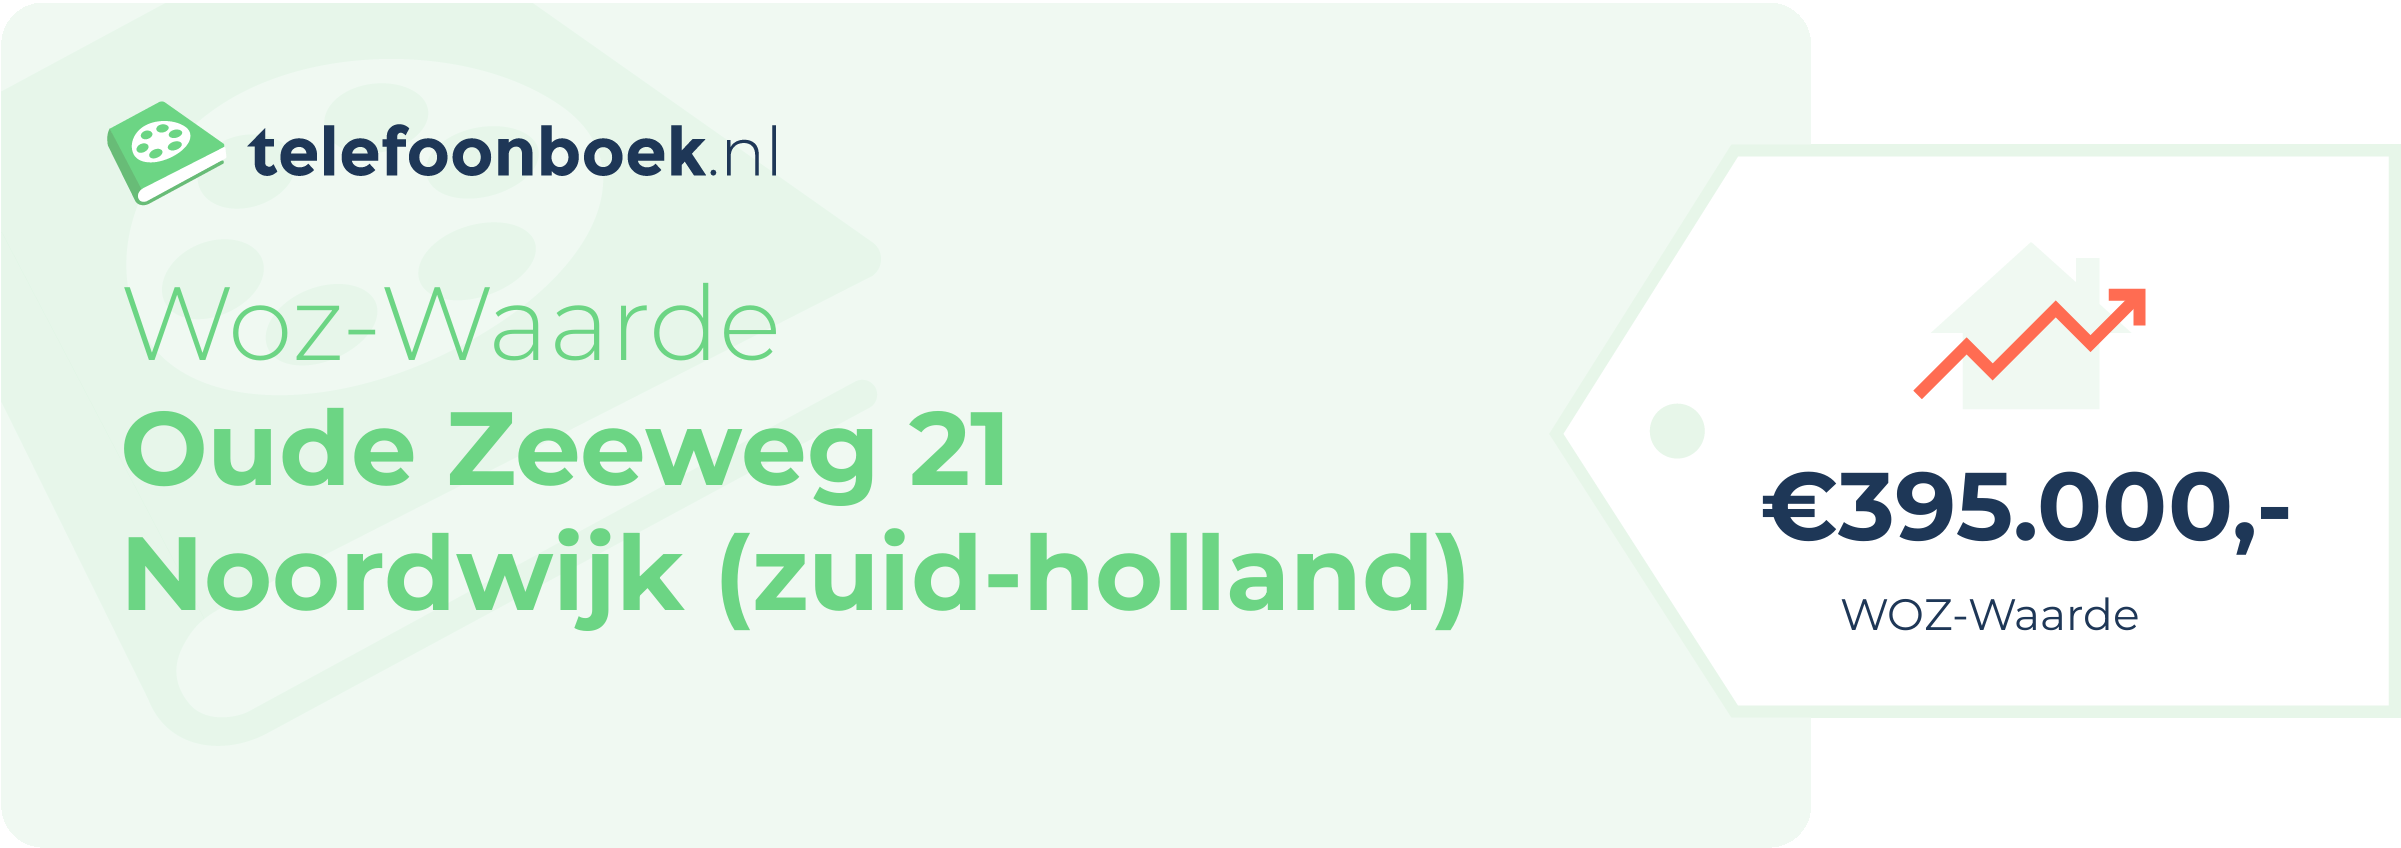 WOZ-waarde Oude Zeeweg 21 Noordwijk (Zuid-Holland)